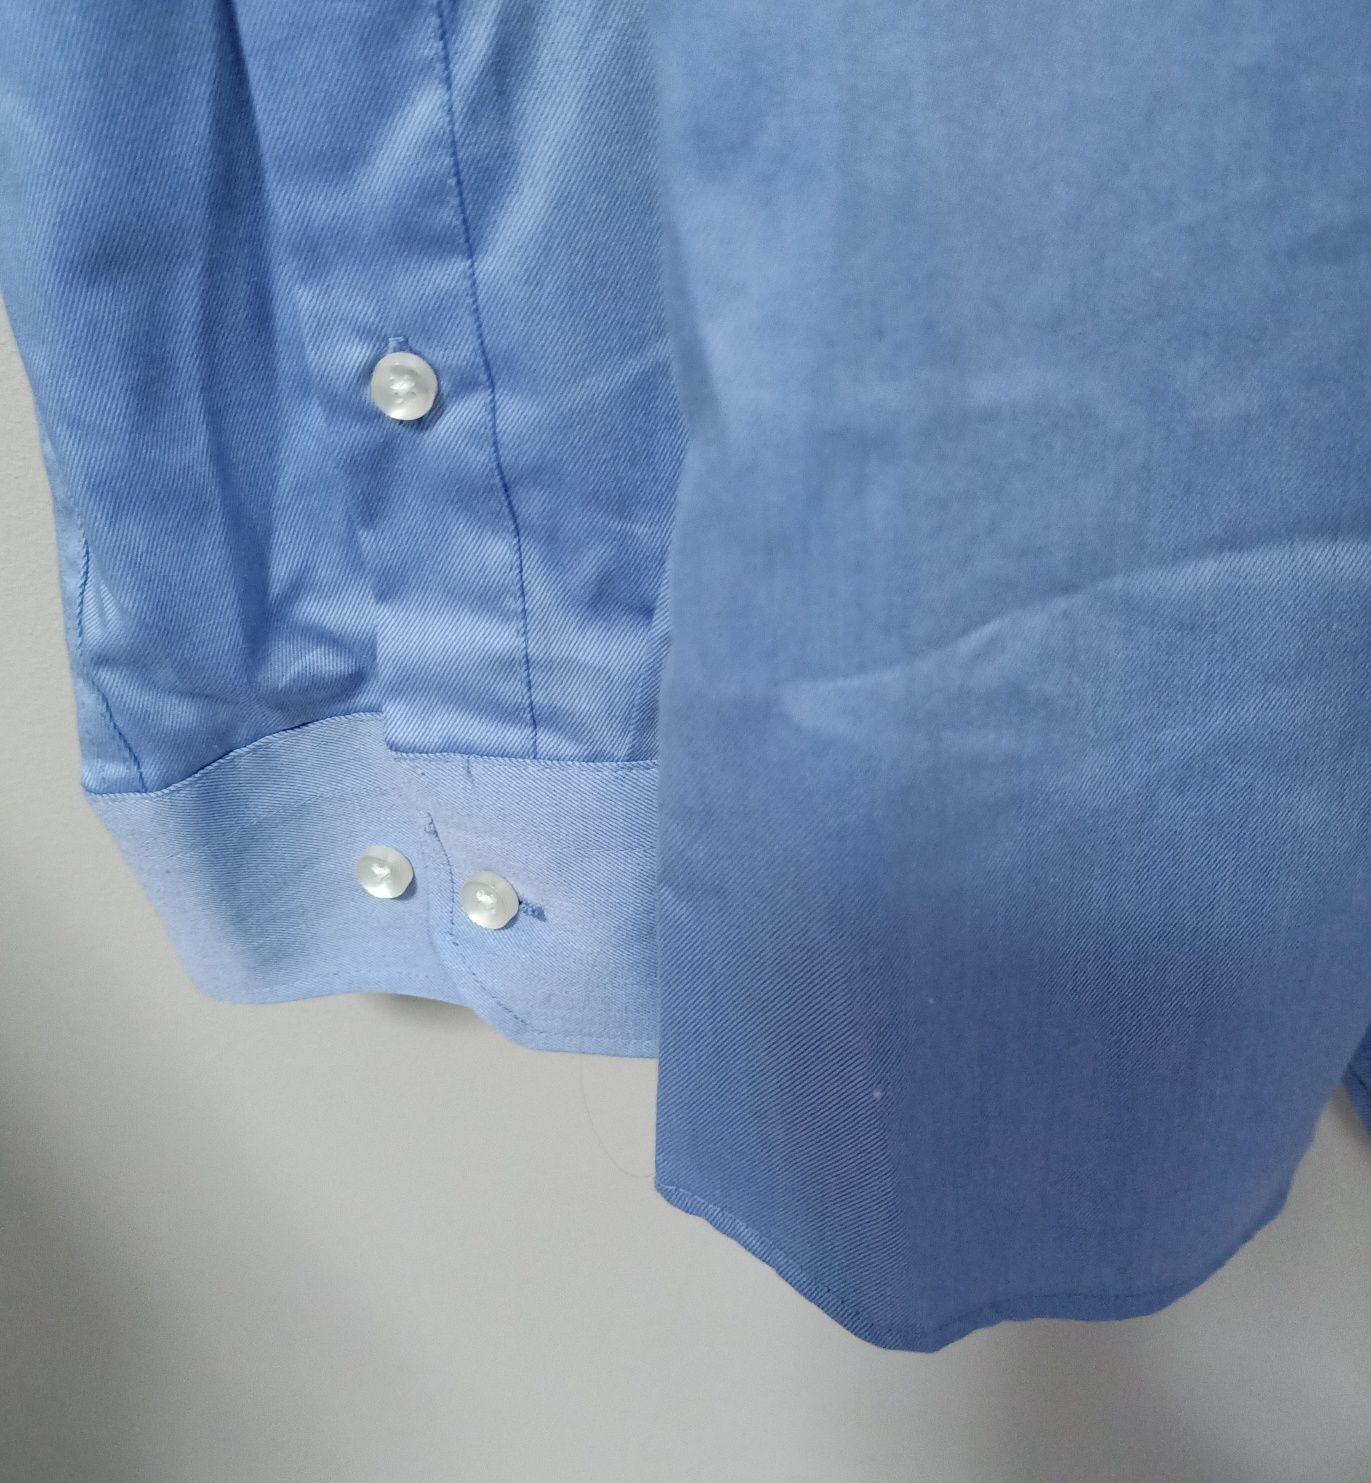 Nowa, niebieskia koszula męska na guziki, do garnituru czy jeansów 41